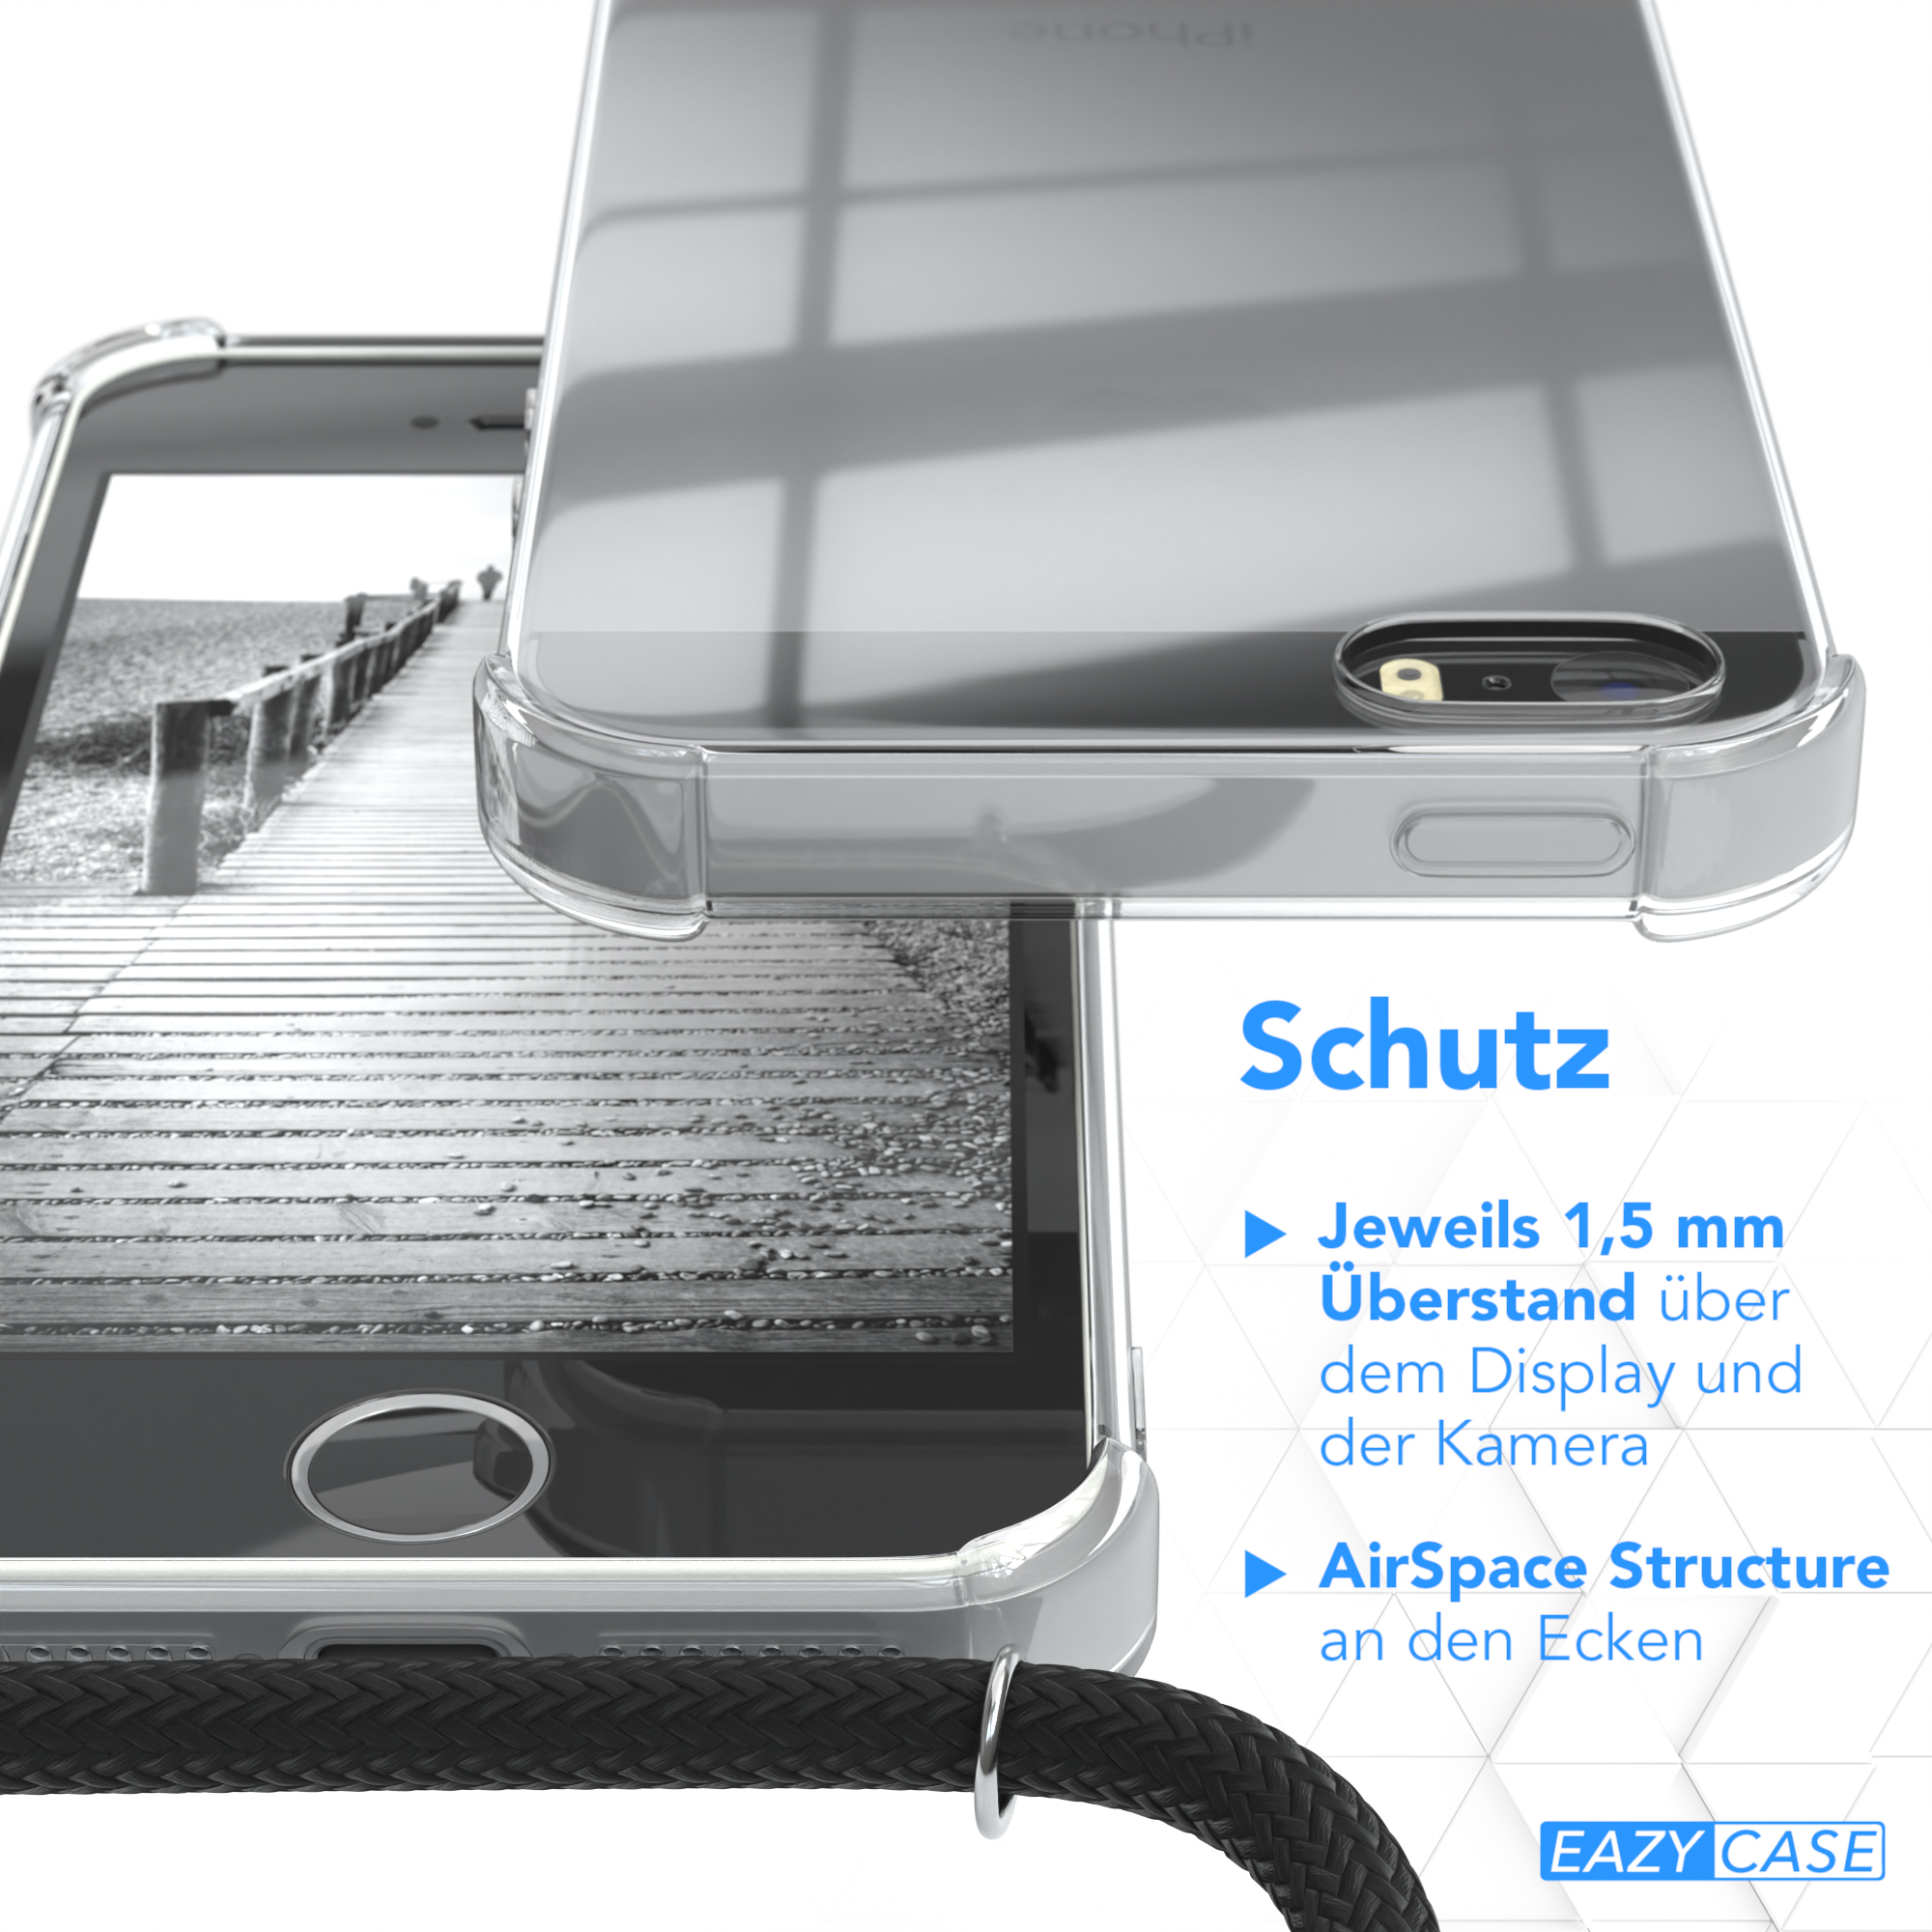 2016, iPhone CASE / Apple, 5 mit EAZY Clear Schwarz Umhängeband, Umhängetasche, SE iPhone Cover 5S,